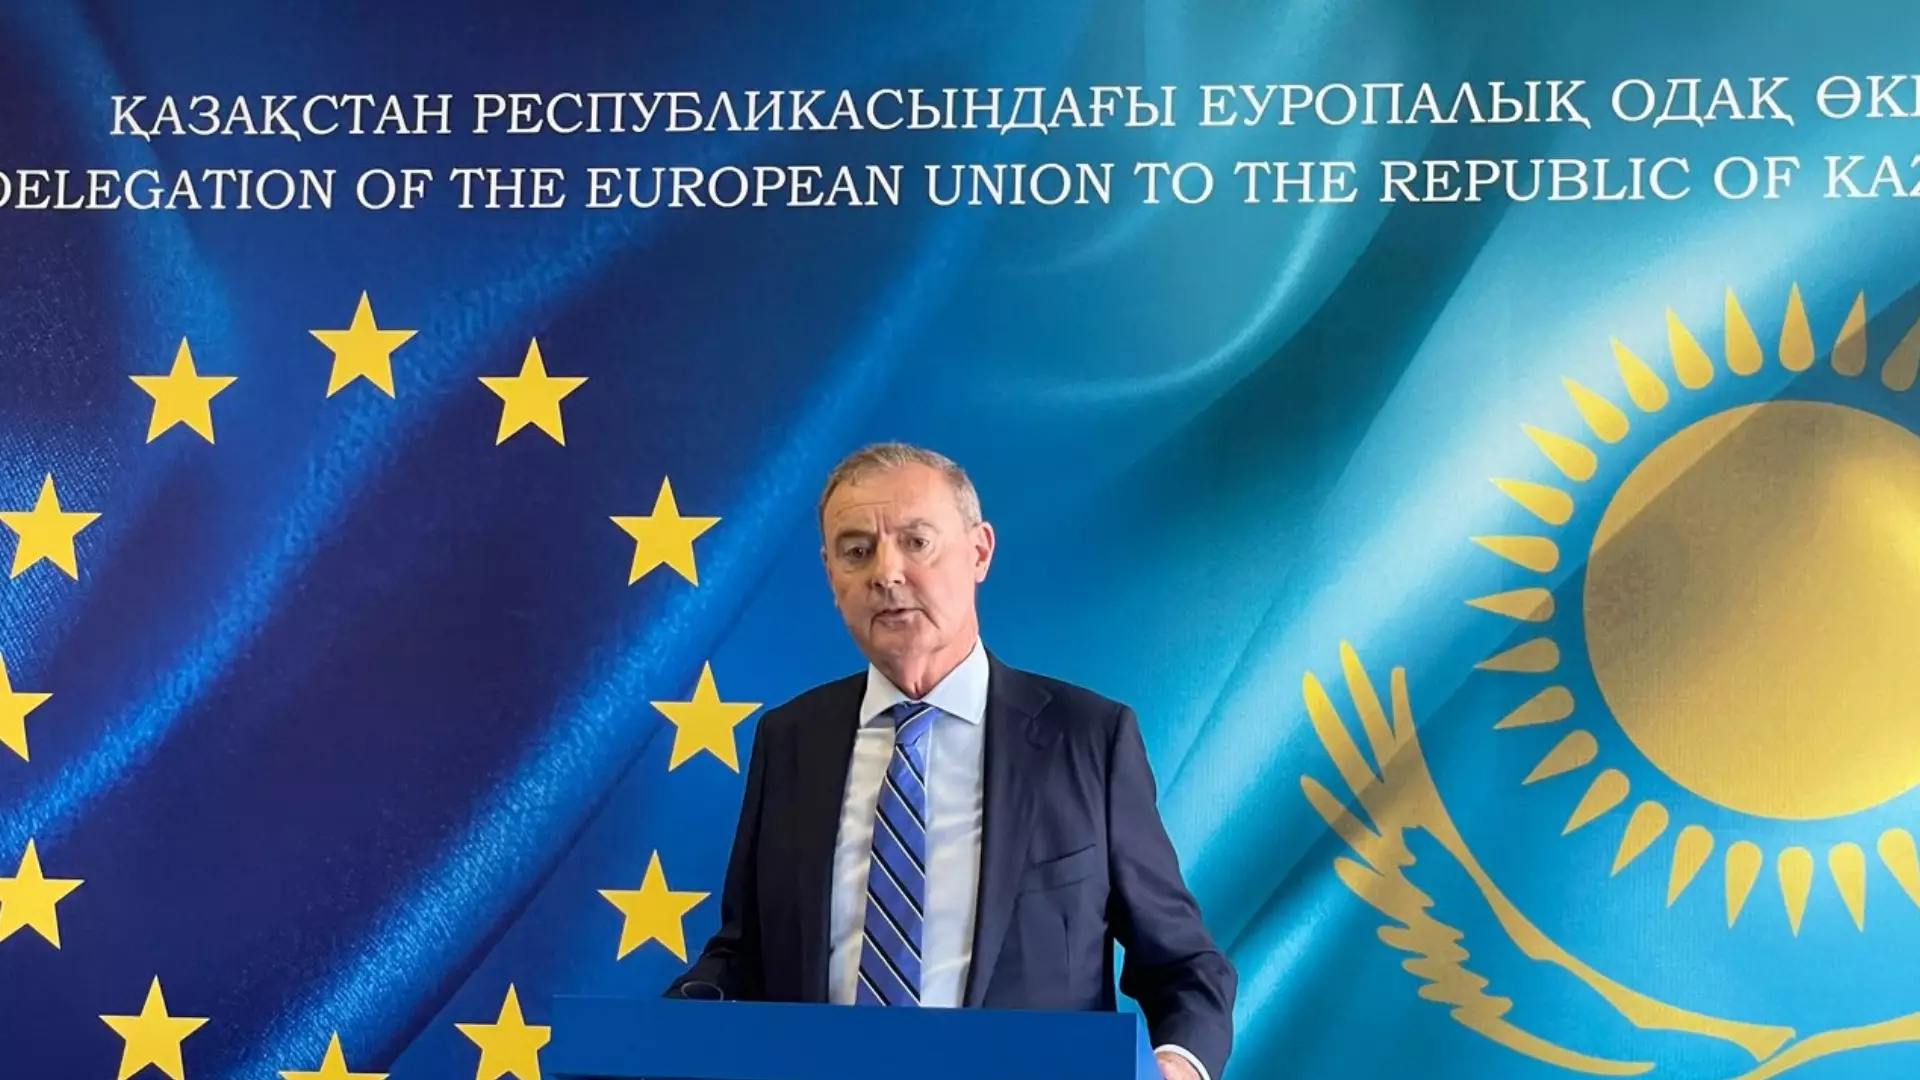 Мы уважаем решение Казахстана не присоединяться к санкциям – посланник ЕС